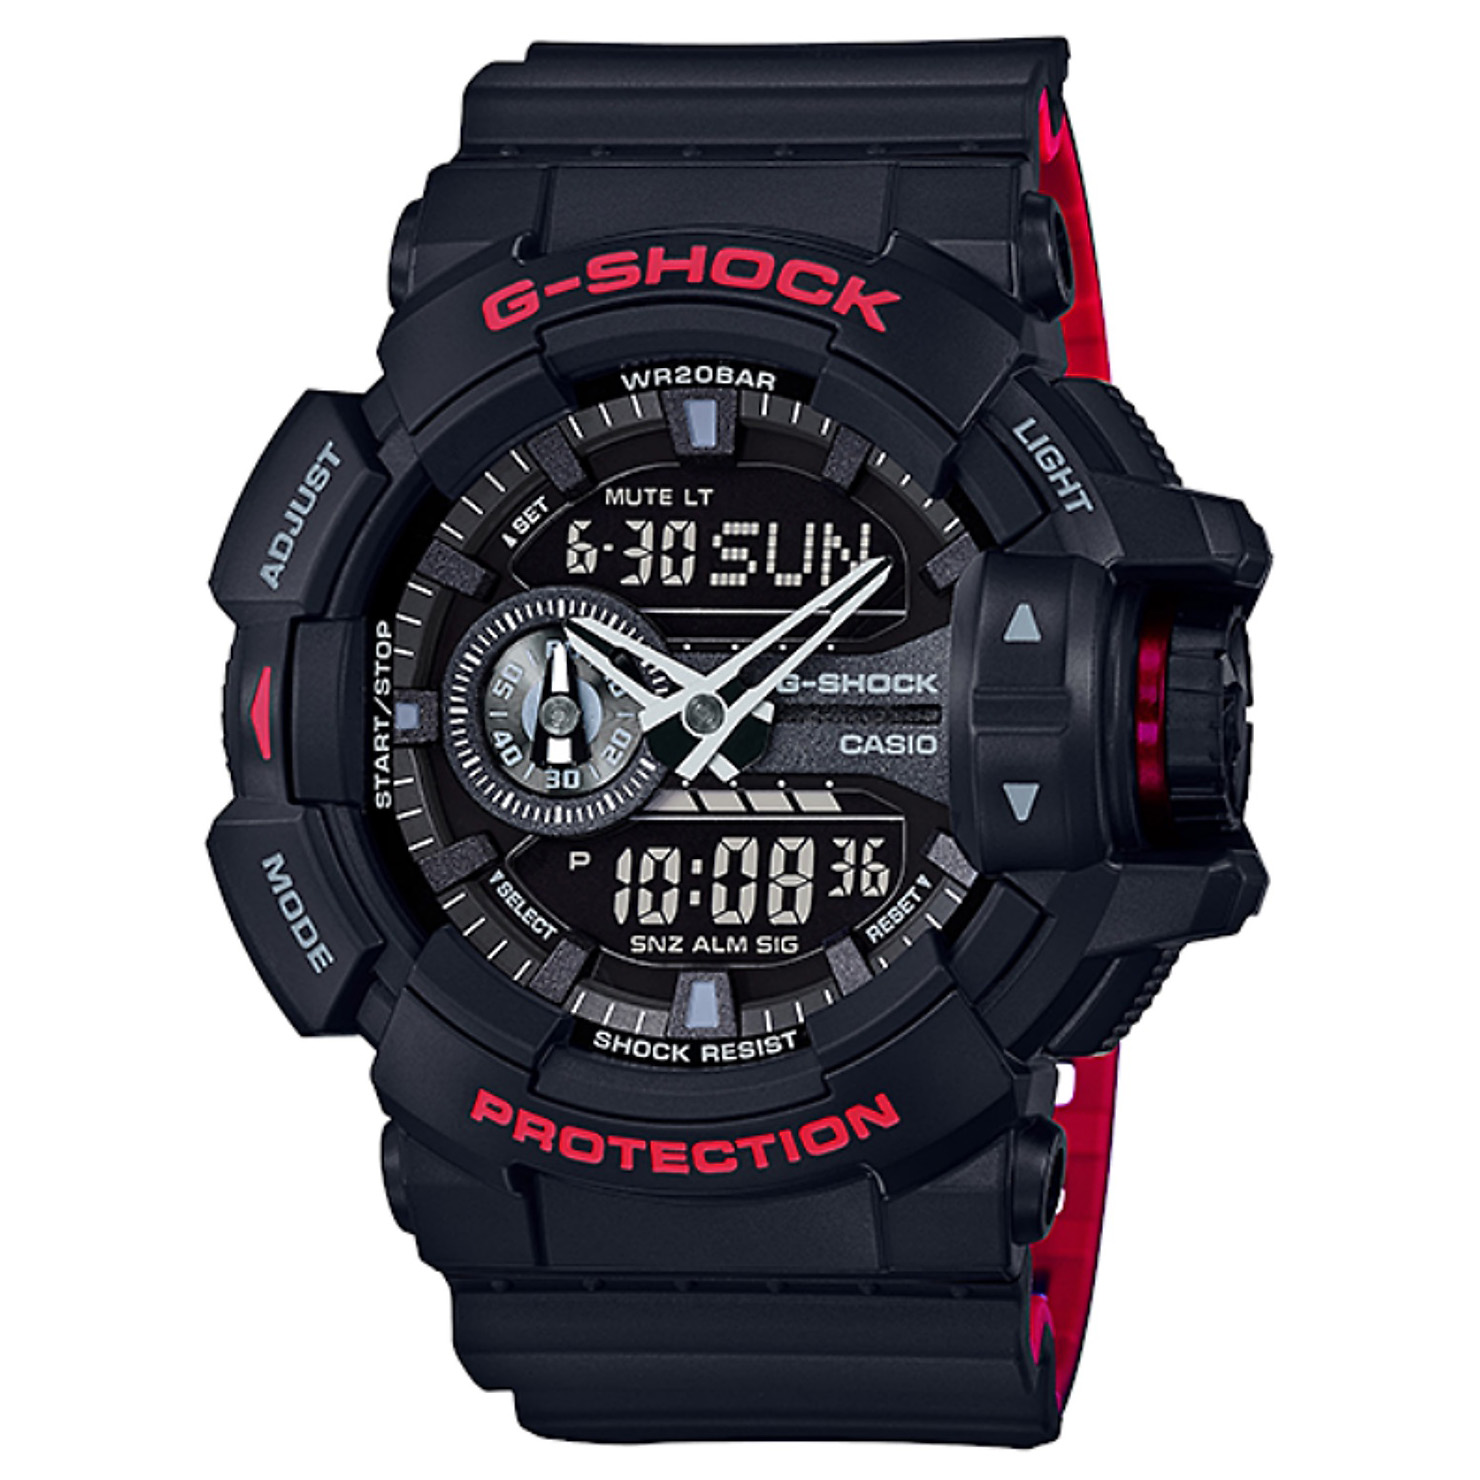 đồng hồ g-shock ga-400hr-1a dây đen đỏ